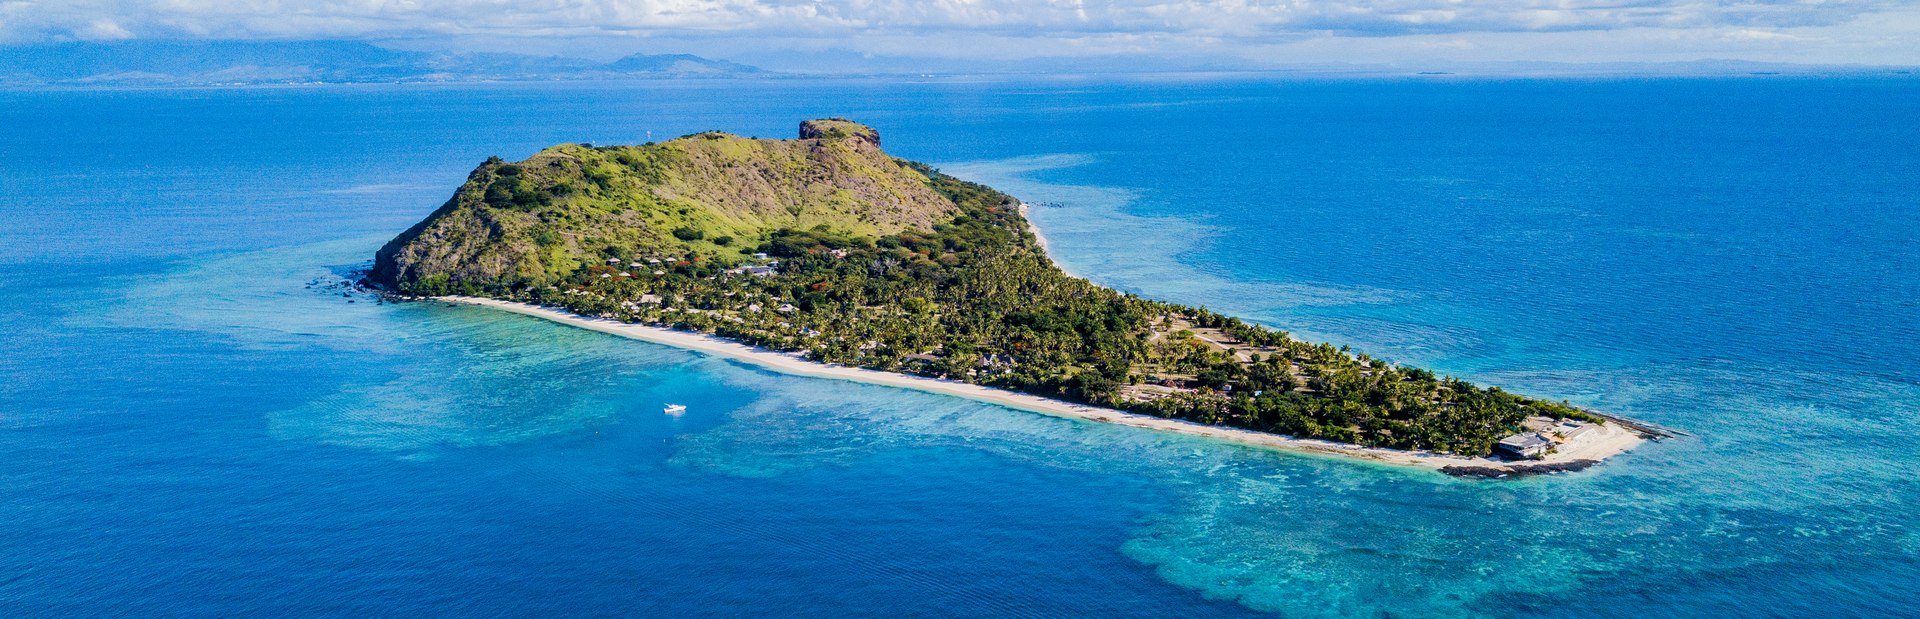 Vomo Island Fiji Resort Image 1